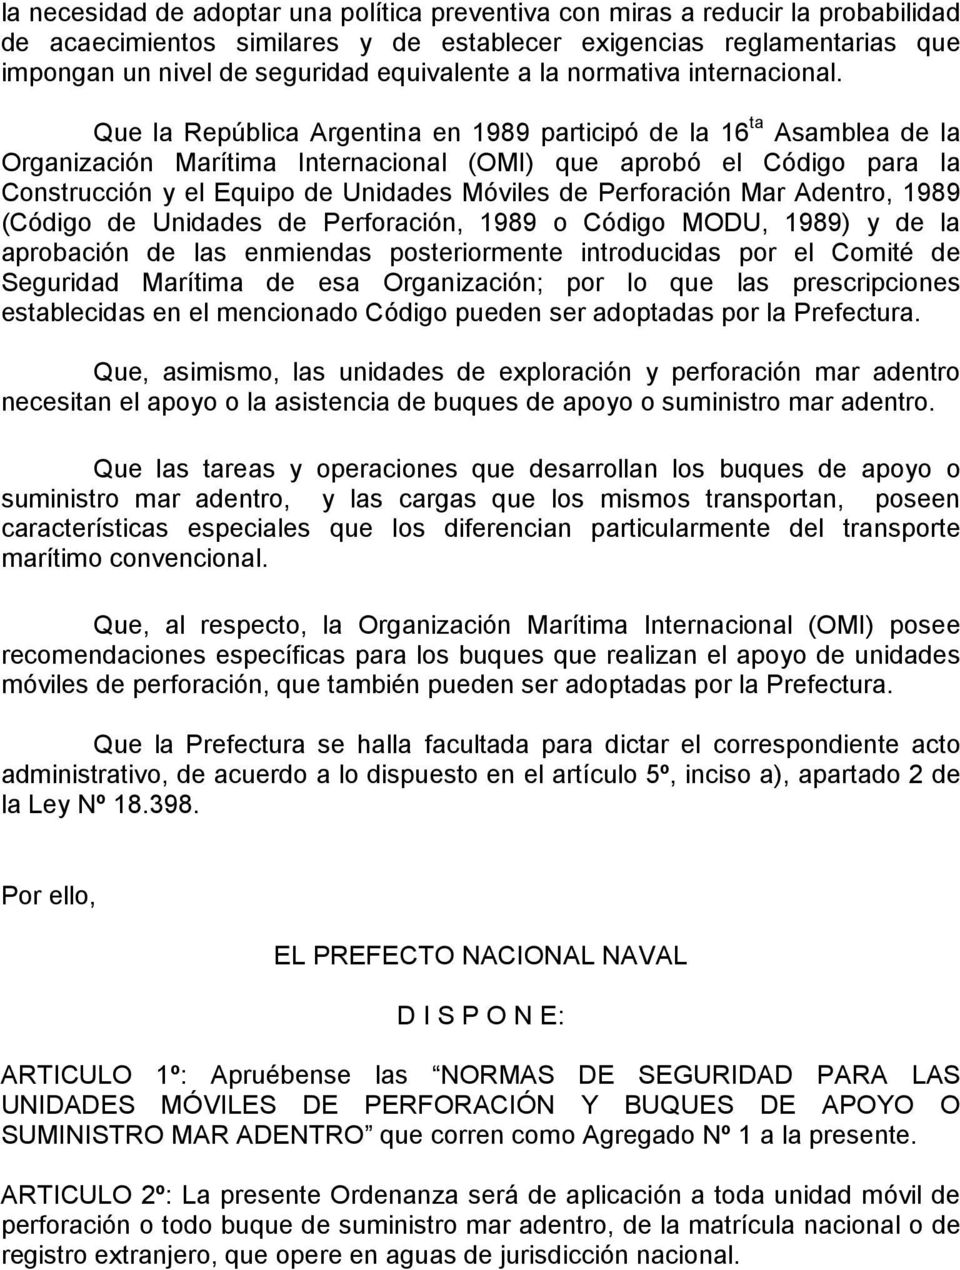 Que la República Argentina en 1989 participó de la 16 ta Asamblea de la Organización Marítima Internacional (OMI) que aprobó el Código para la Construcción y el Equipo de Unidades Móviles de